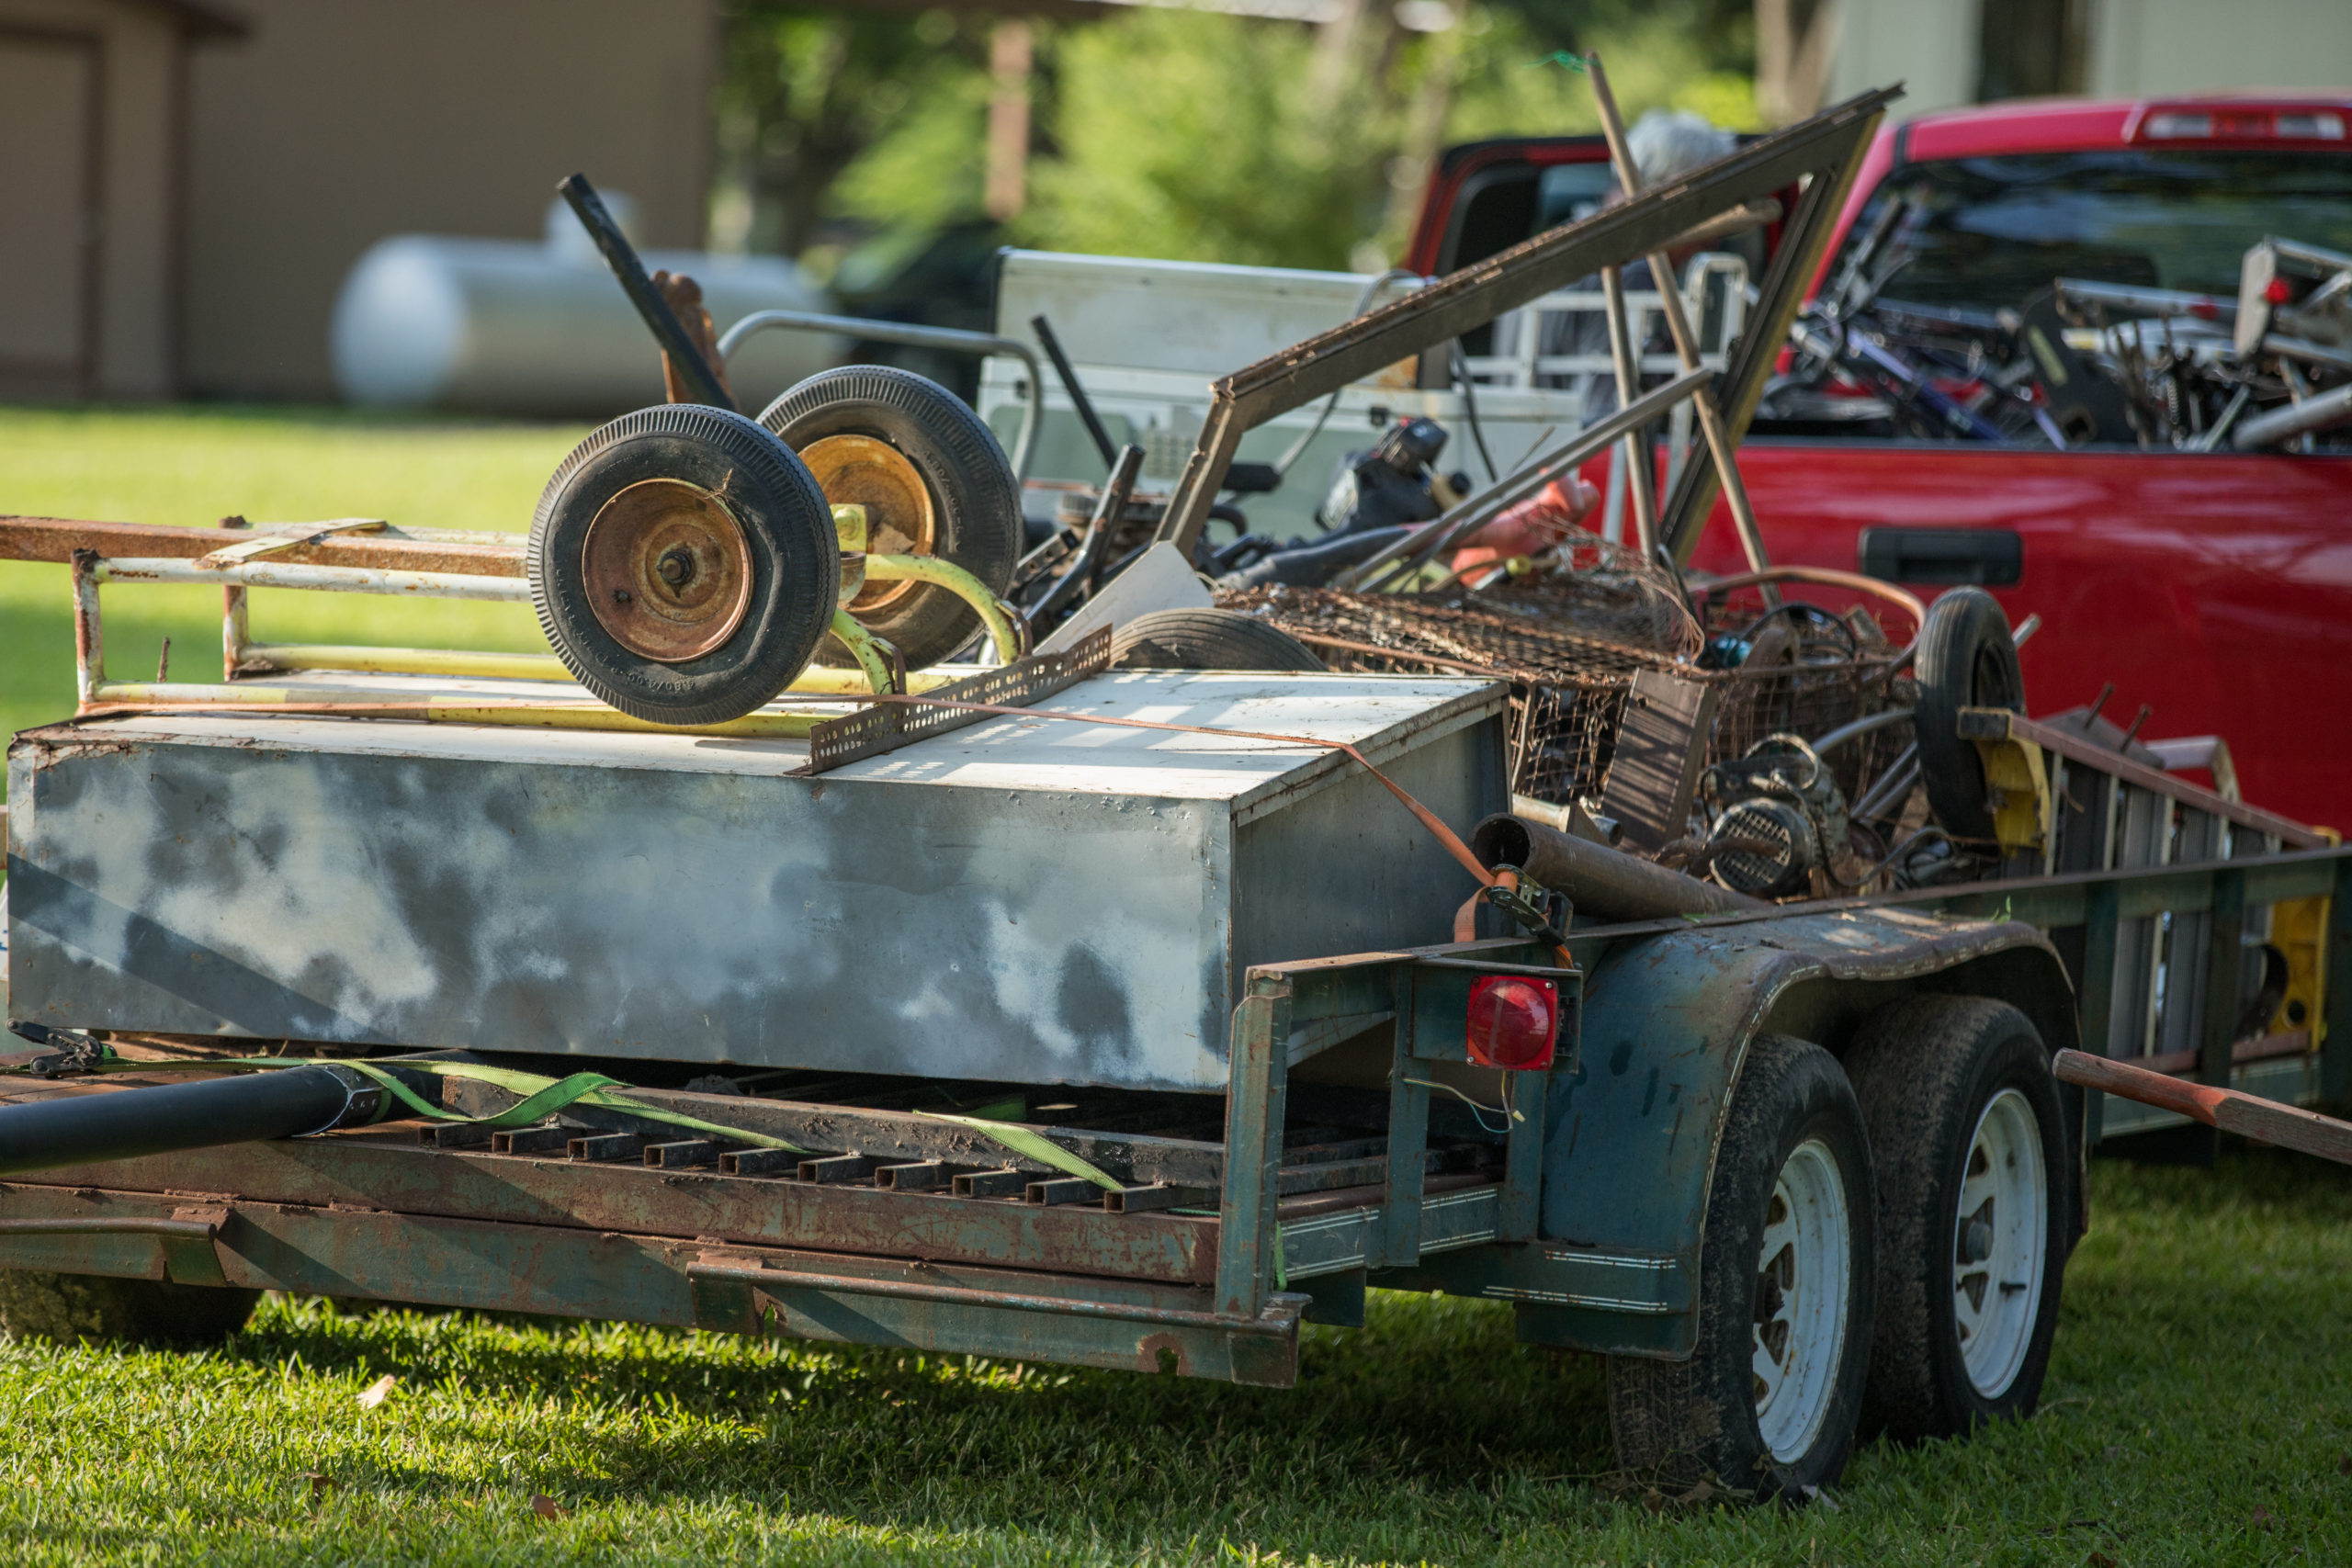 A truck hauling away junk and scrap metal